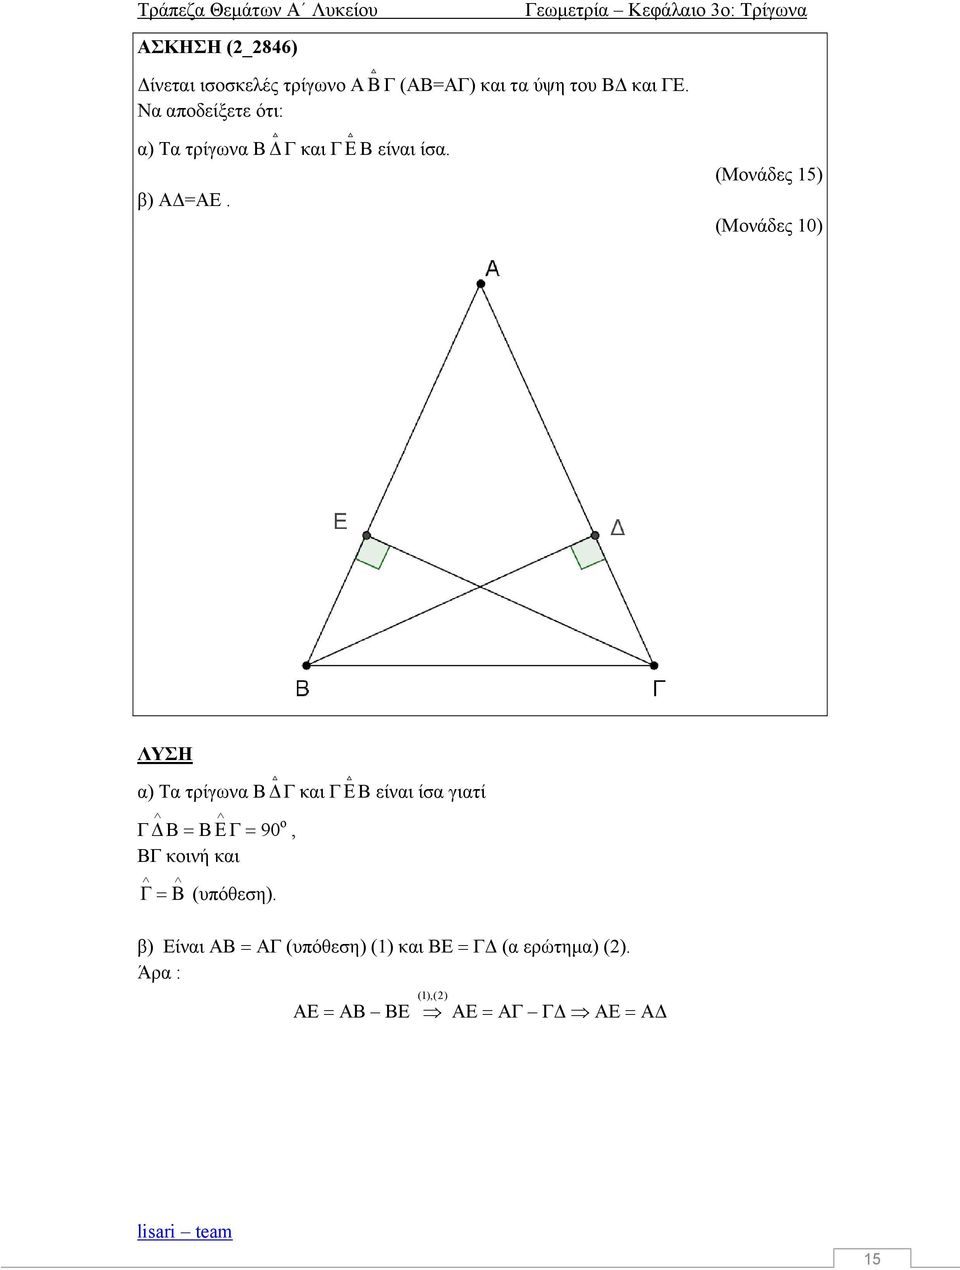 (Μνάδες 15) (Μνάδες 1) ΛΥΣΗ α) Τα τρίγωνα Β Γ και Γ Β είναι ίσα γιατί Γ Β Β Γ 9, ΒΓ κινή και